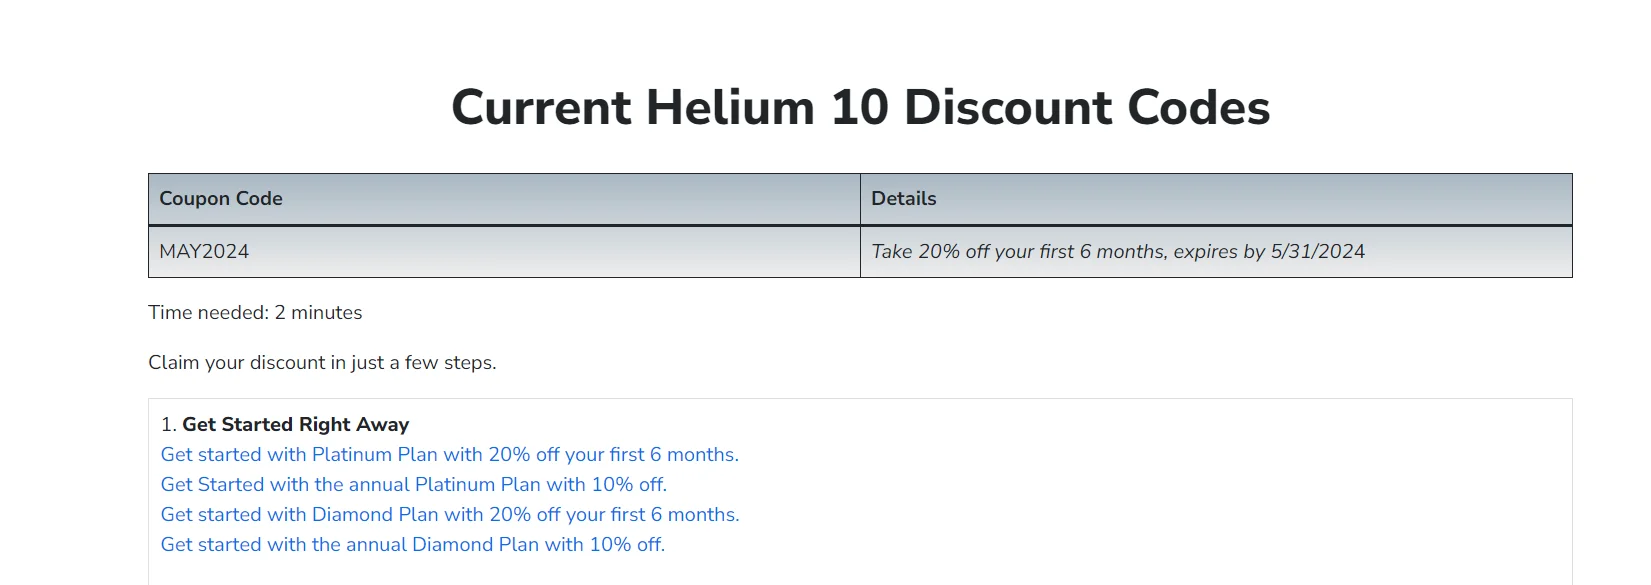 helium 10 discount codes